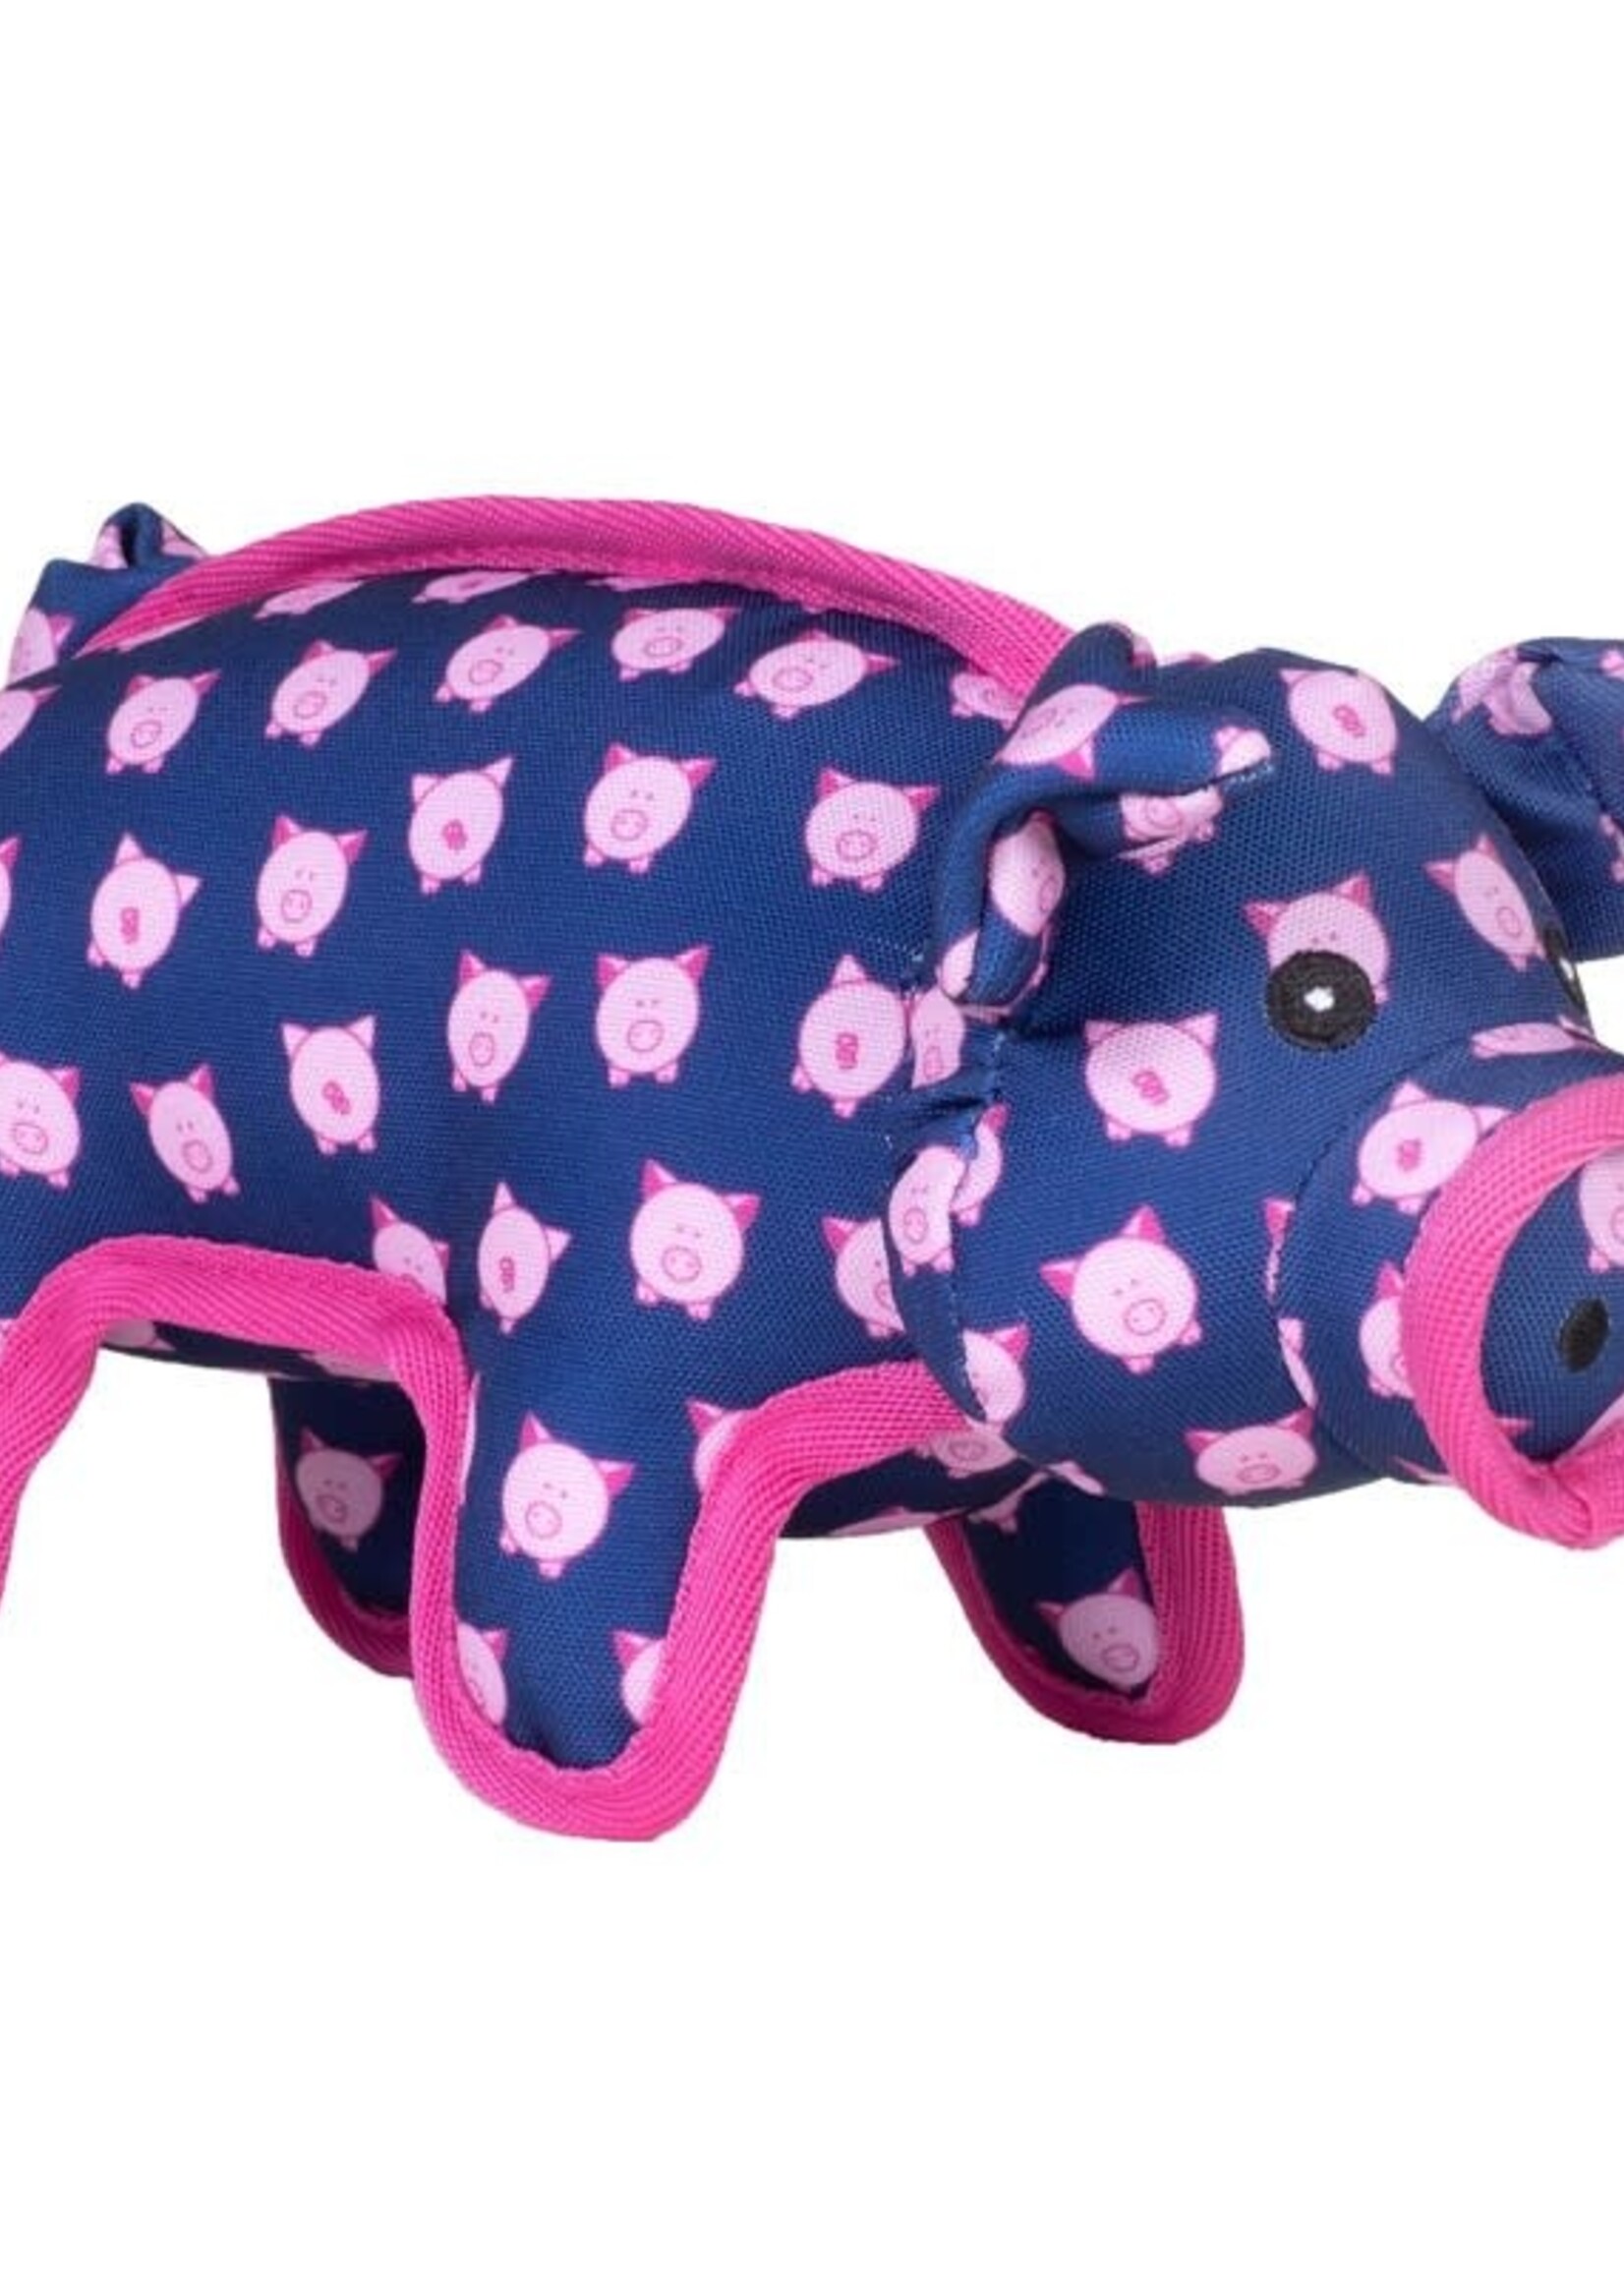 The Worthy Dog The Worthy Dog Wilbur Pig Plush Dog Toy